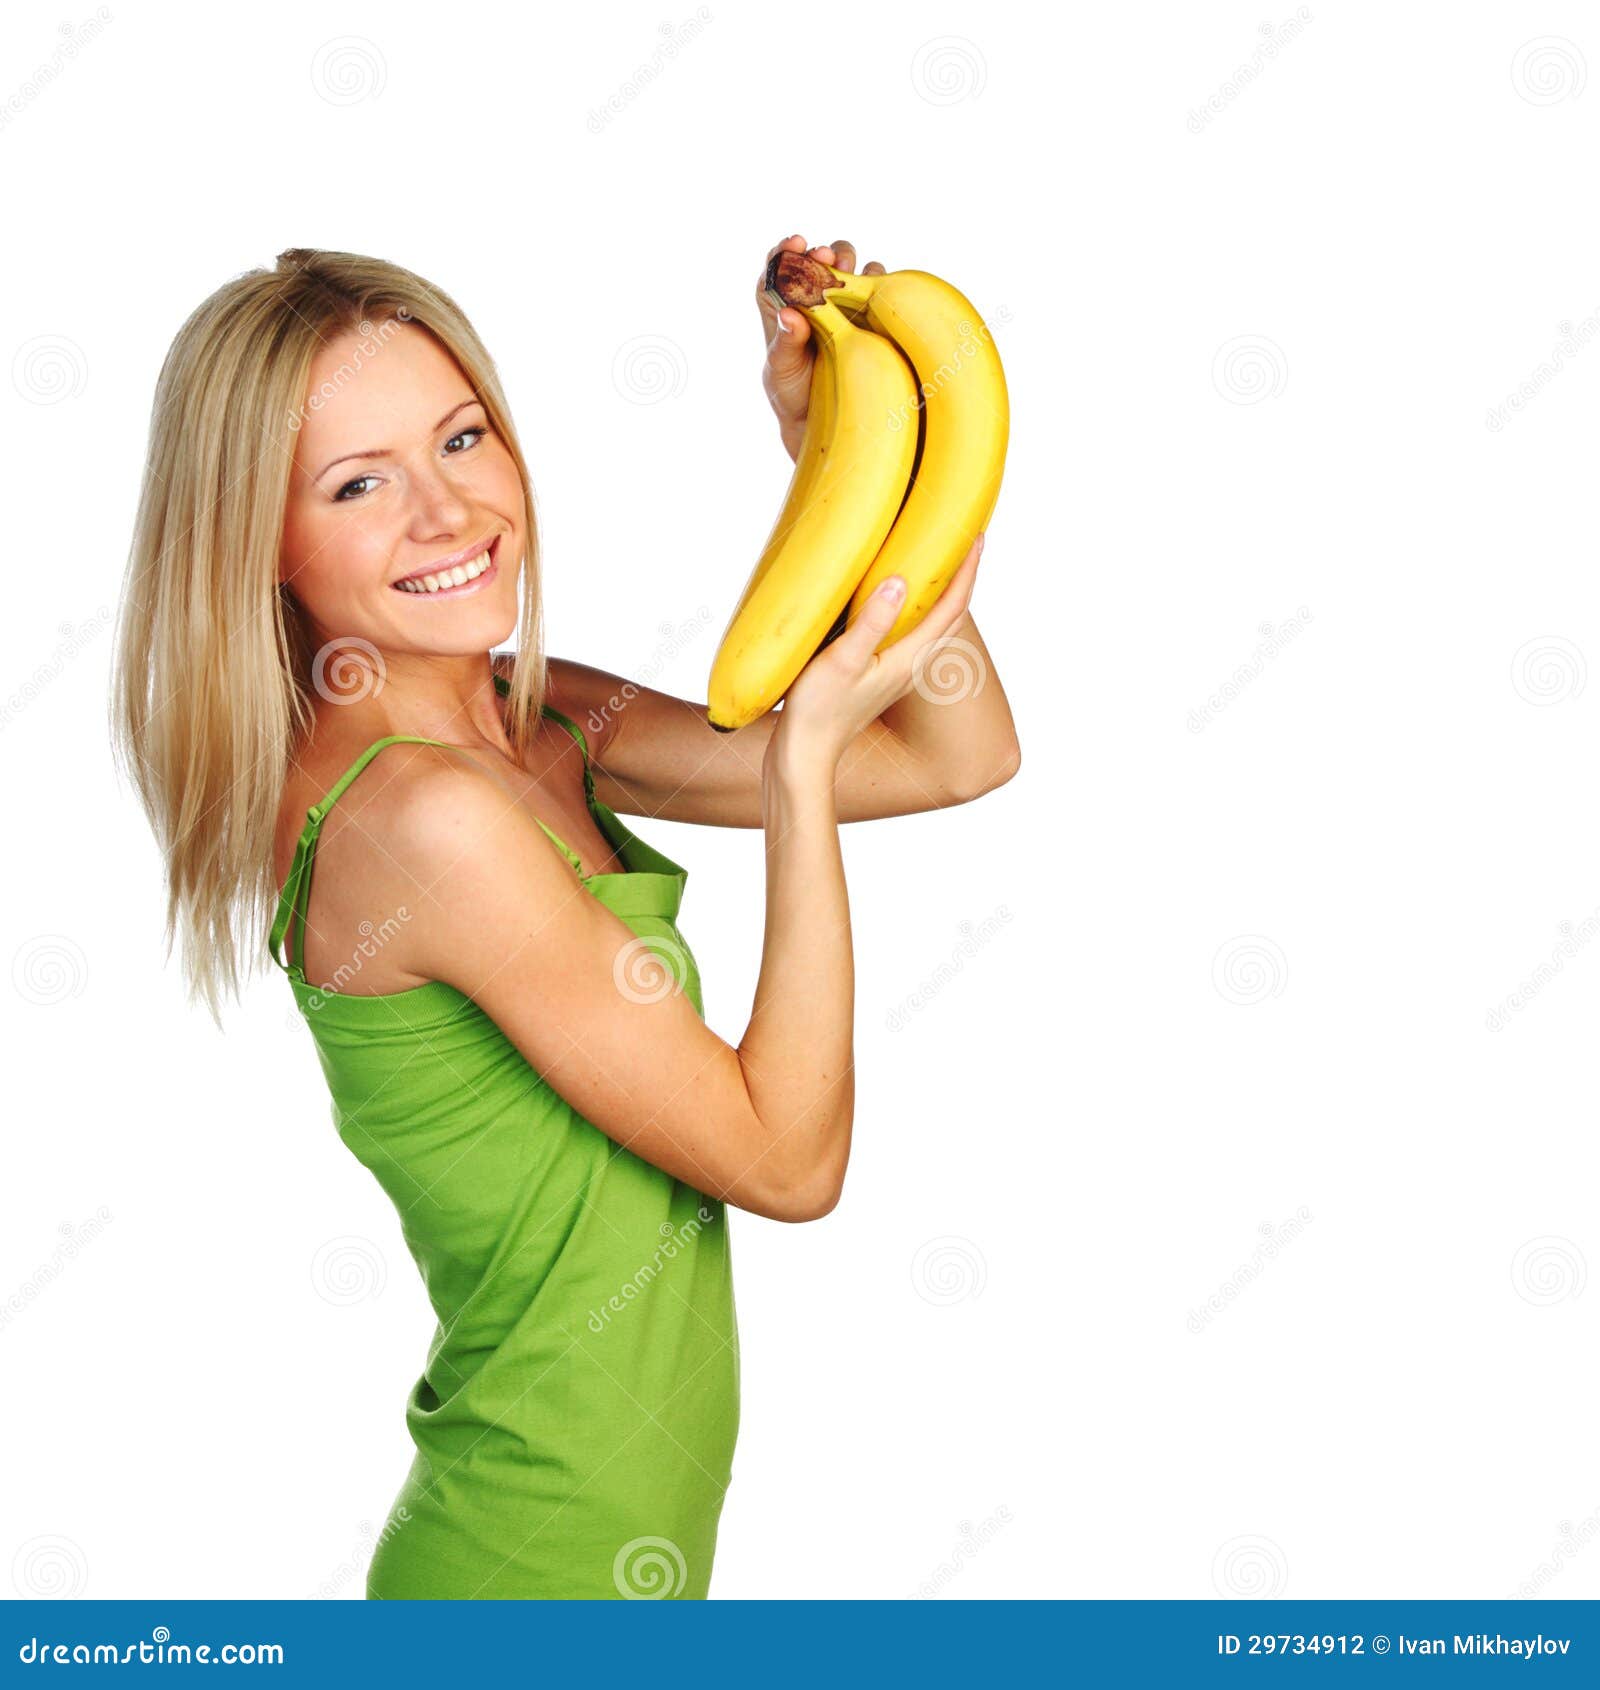 少许吃女孩的香蕉 库存照片. 图片 包括有 楼梯栏杆, 女性, 相当, 白种人, 愉快, 逗人喜爱, 年轻人 - 21237456